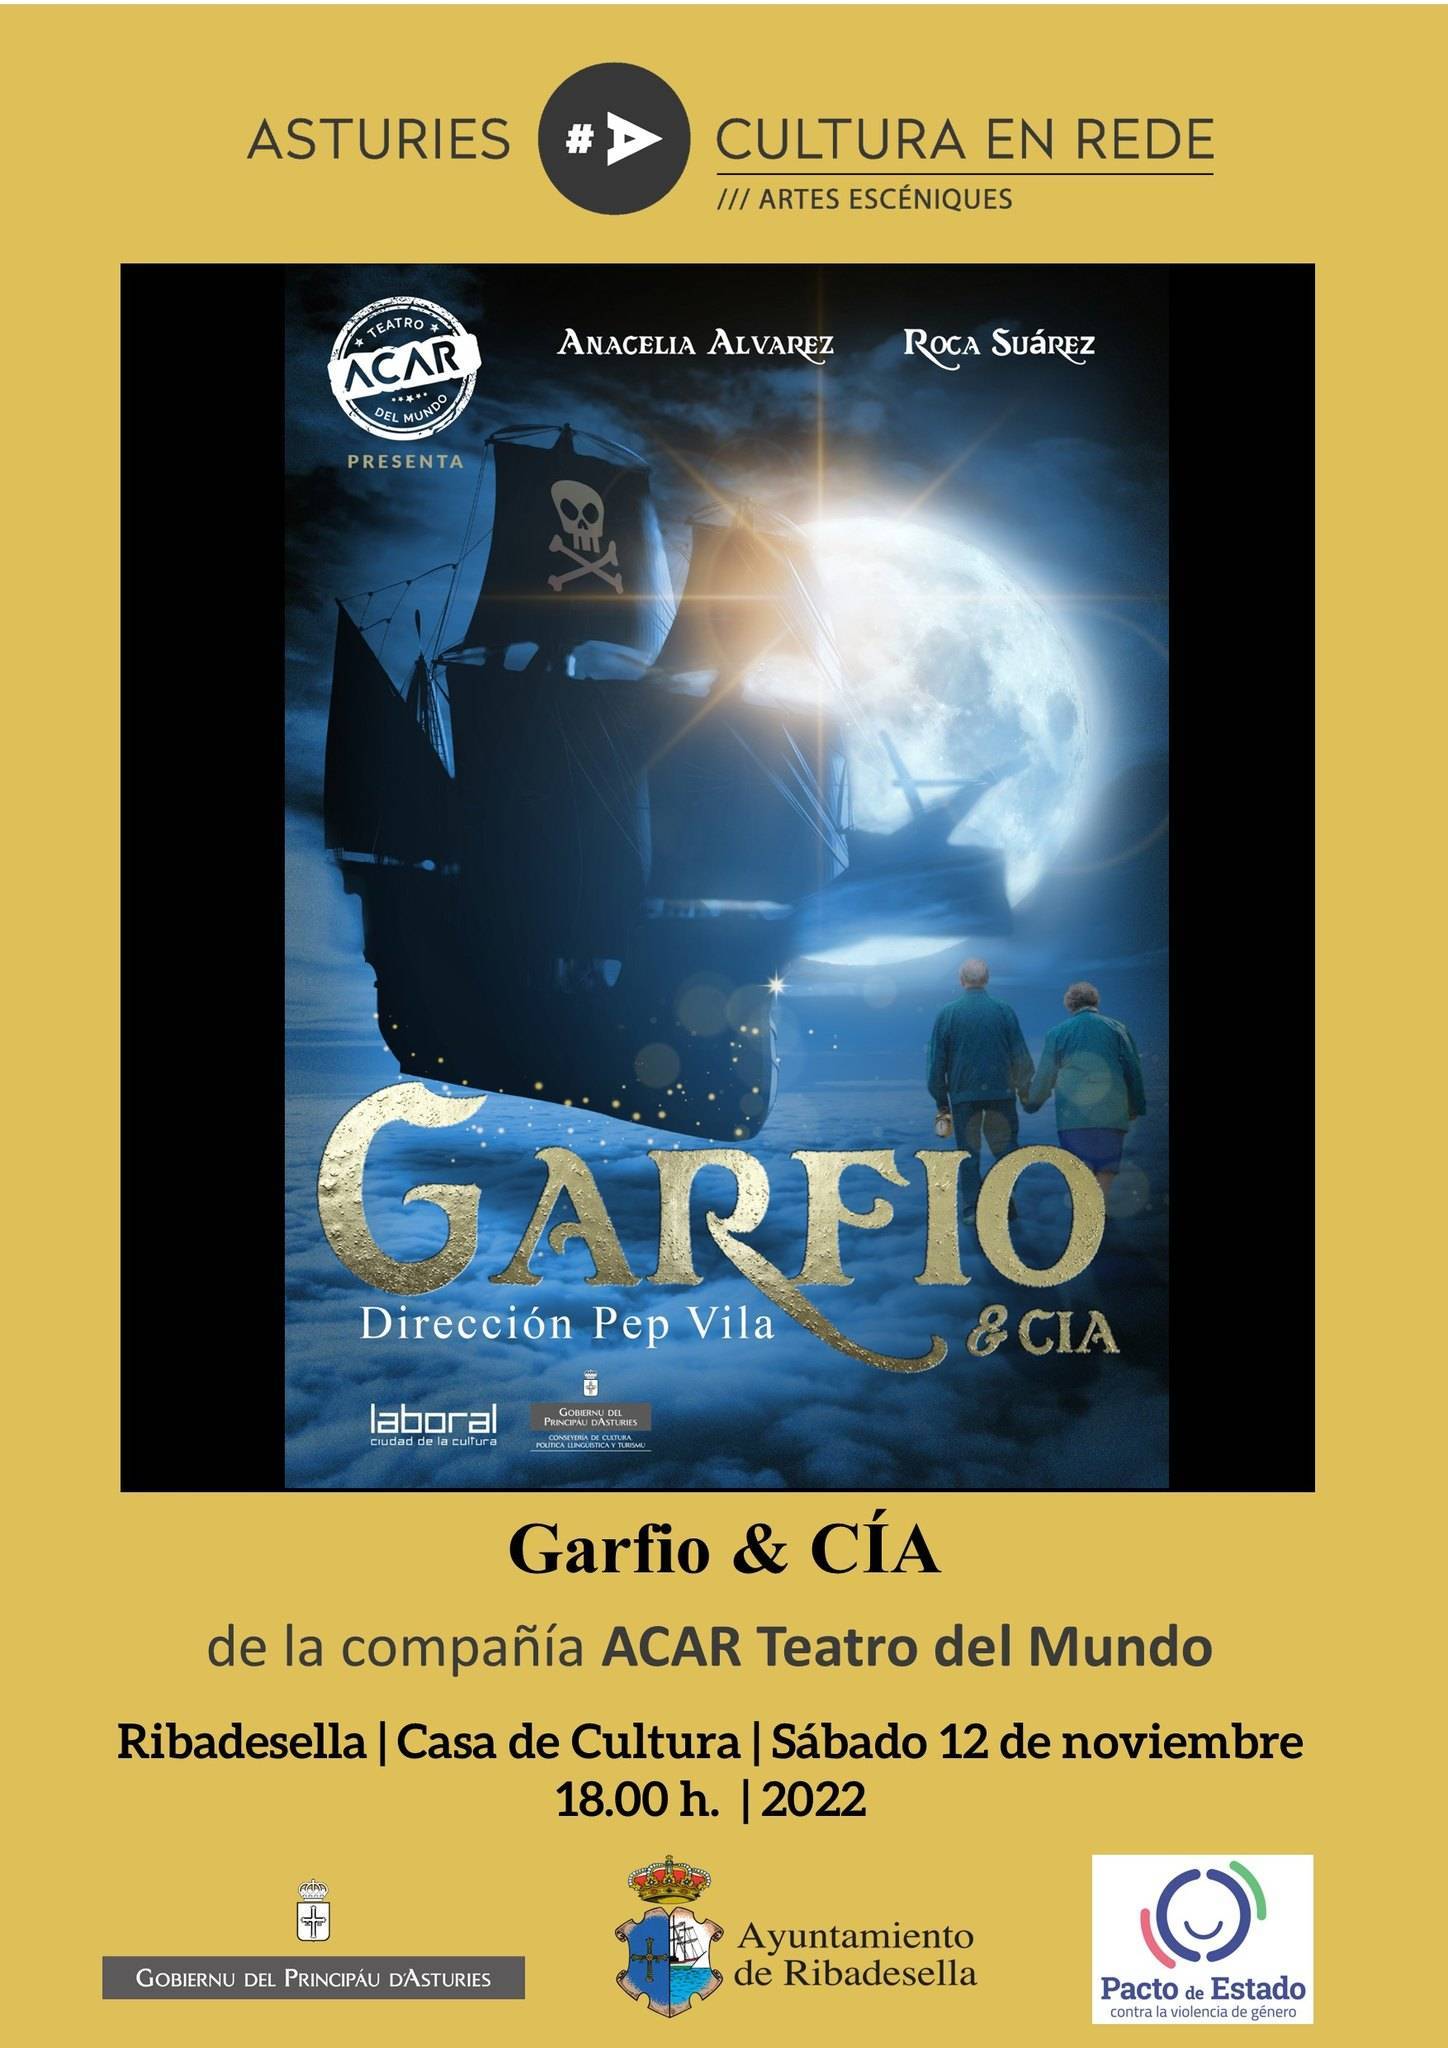 'Garfio & CIA' (2022) - Ribadesella (Asturias)